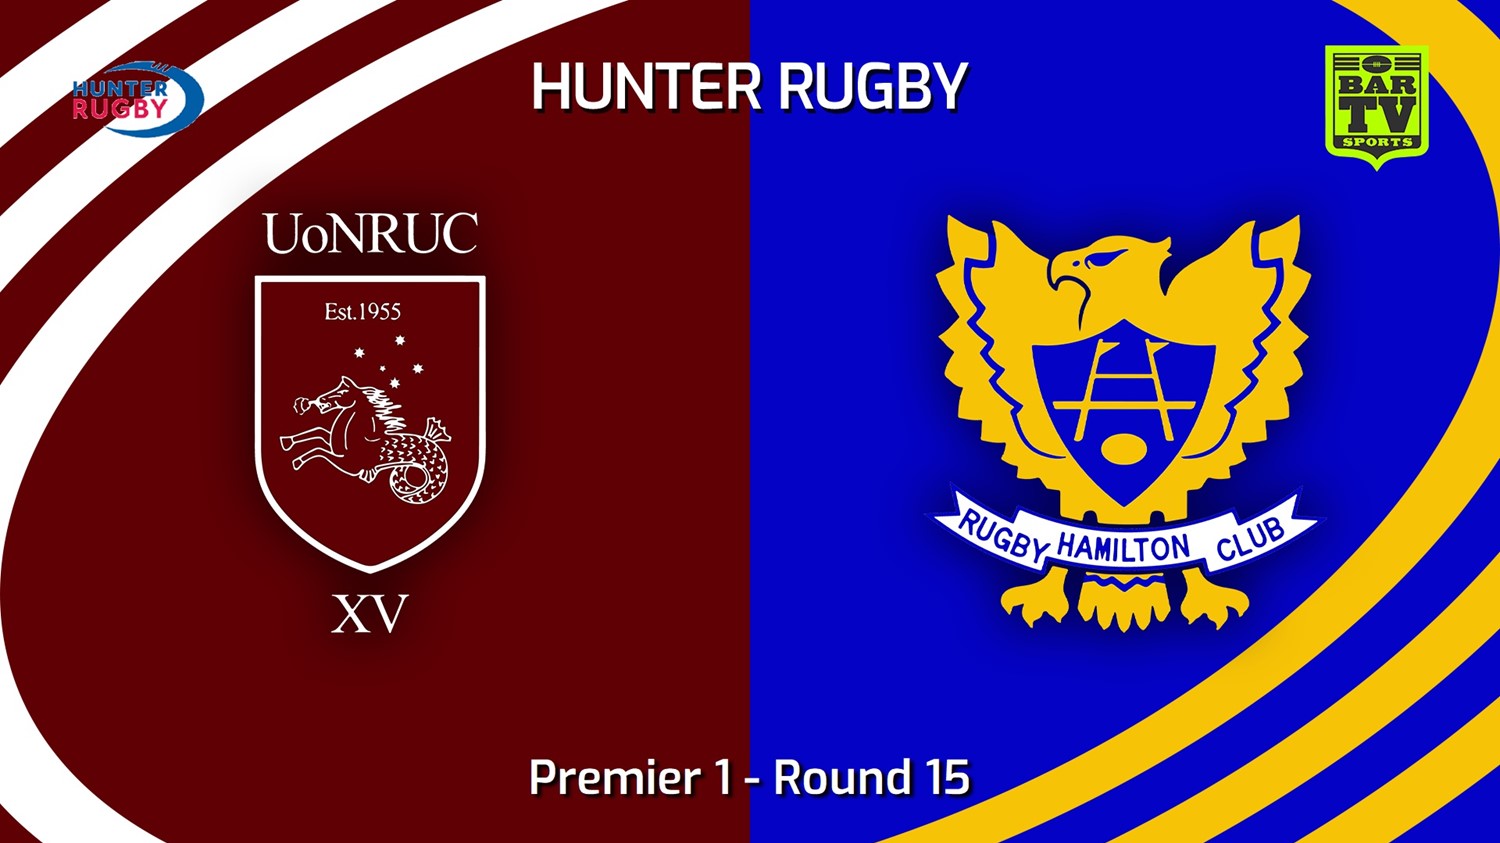 230729-Hunter Rugby Round 15 - Premier 1 - University Of Newcastle v Hamilton Hawks Minigame Slate Image